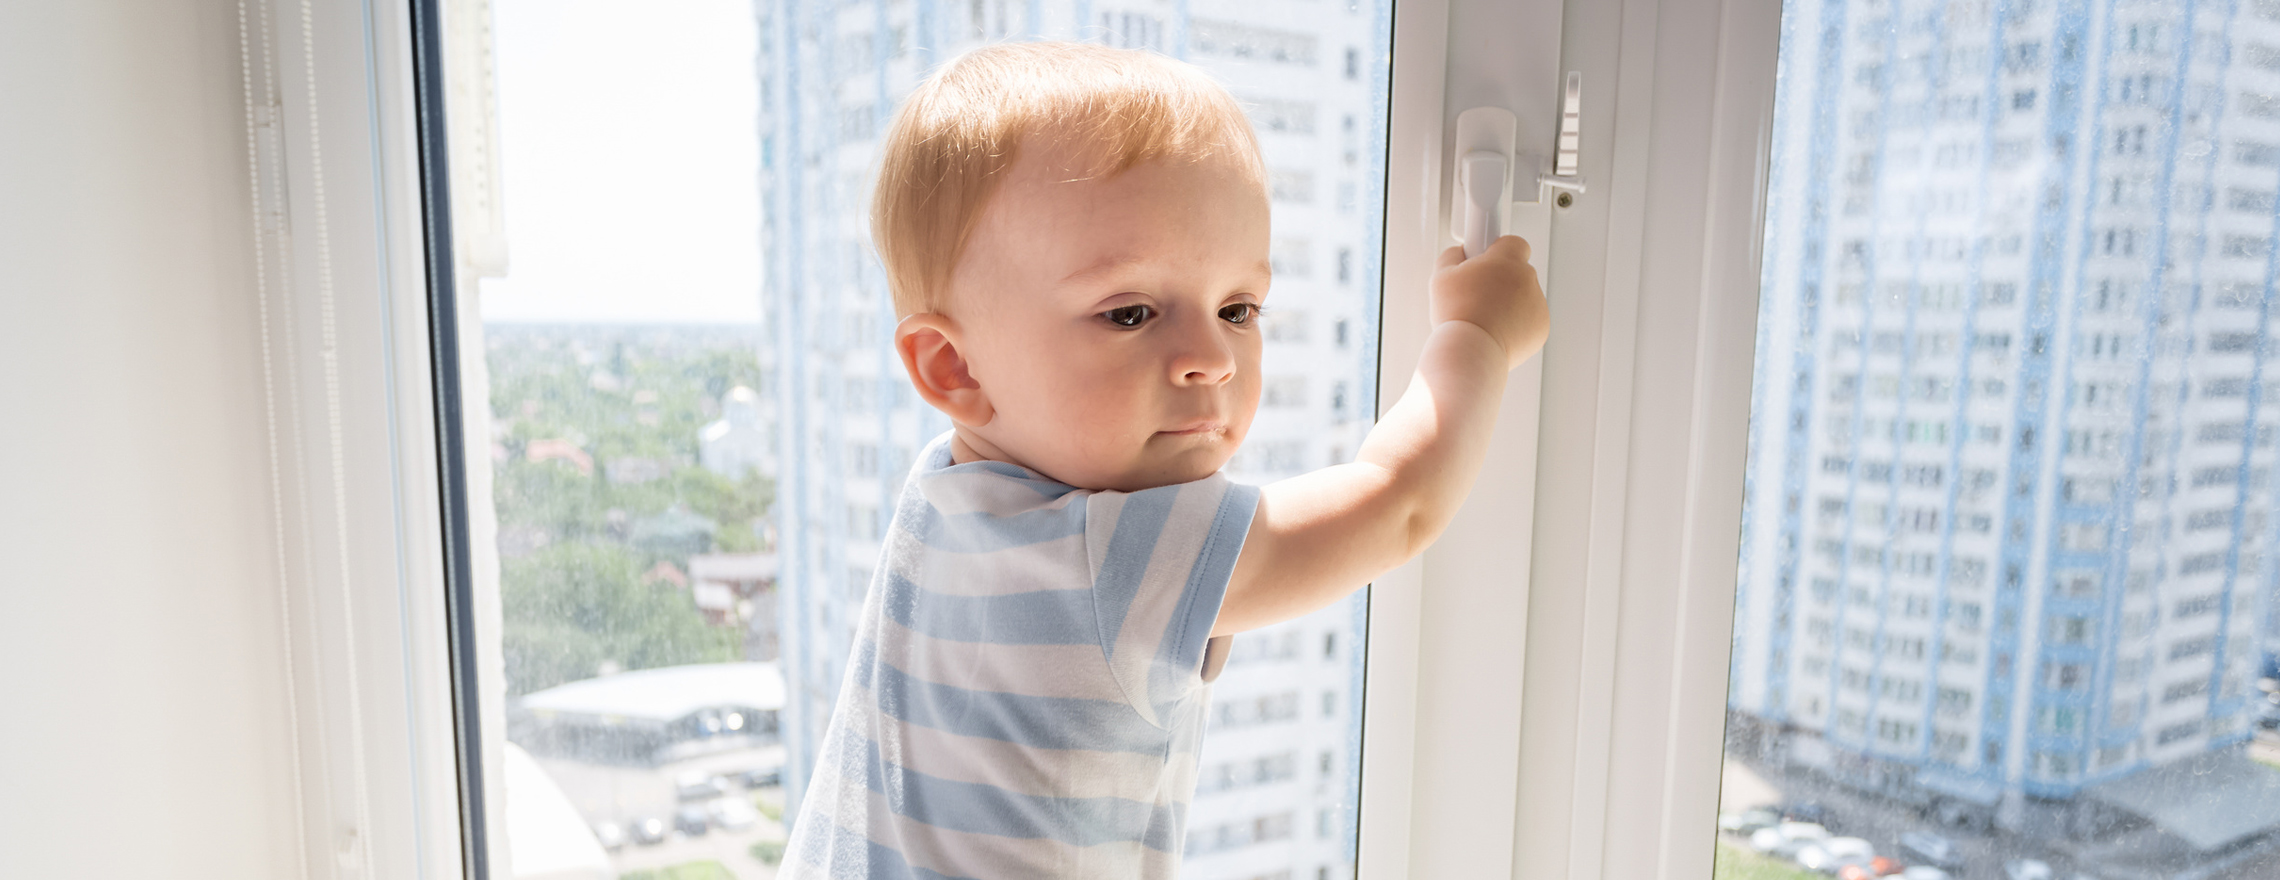 Kleiner Junge klettern an einem Fenster herum